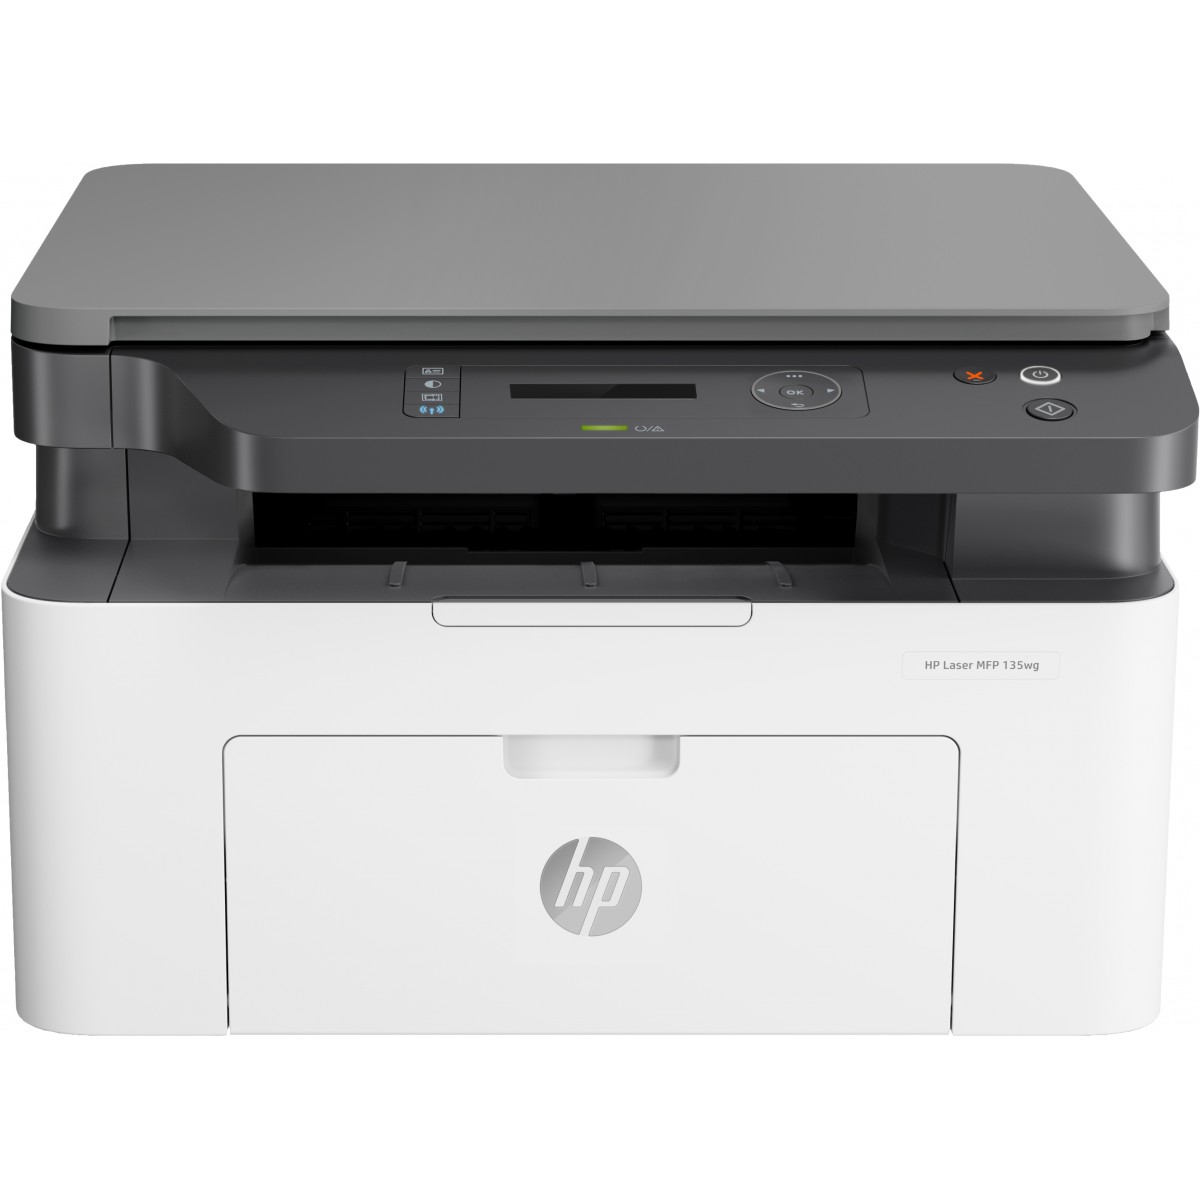 HP Laser MFP 135wg - Multifunktionsdrucker - s/w - Fax - Laser/Led